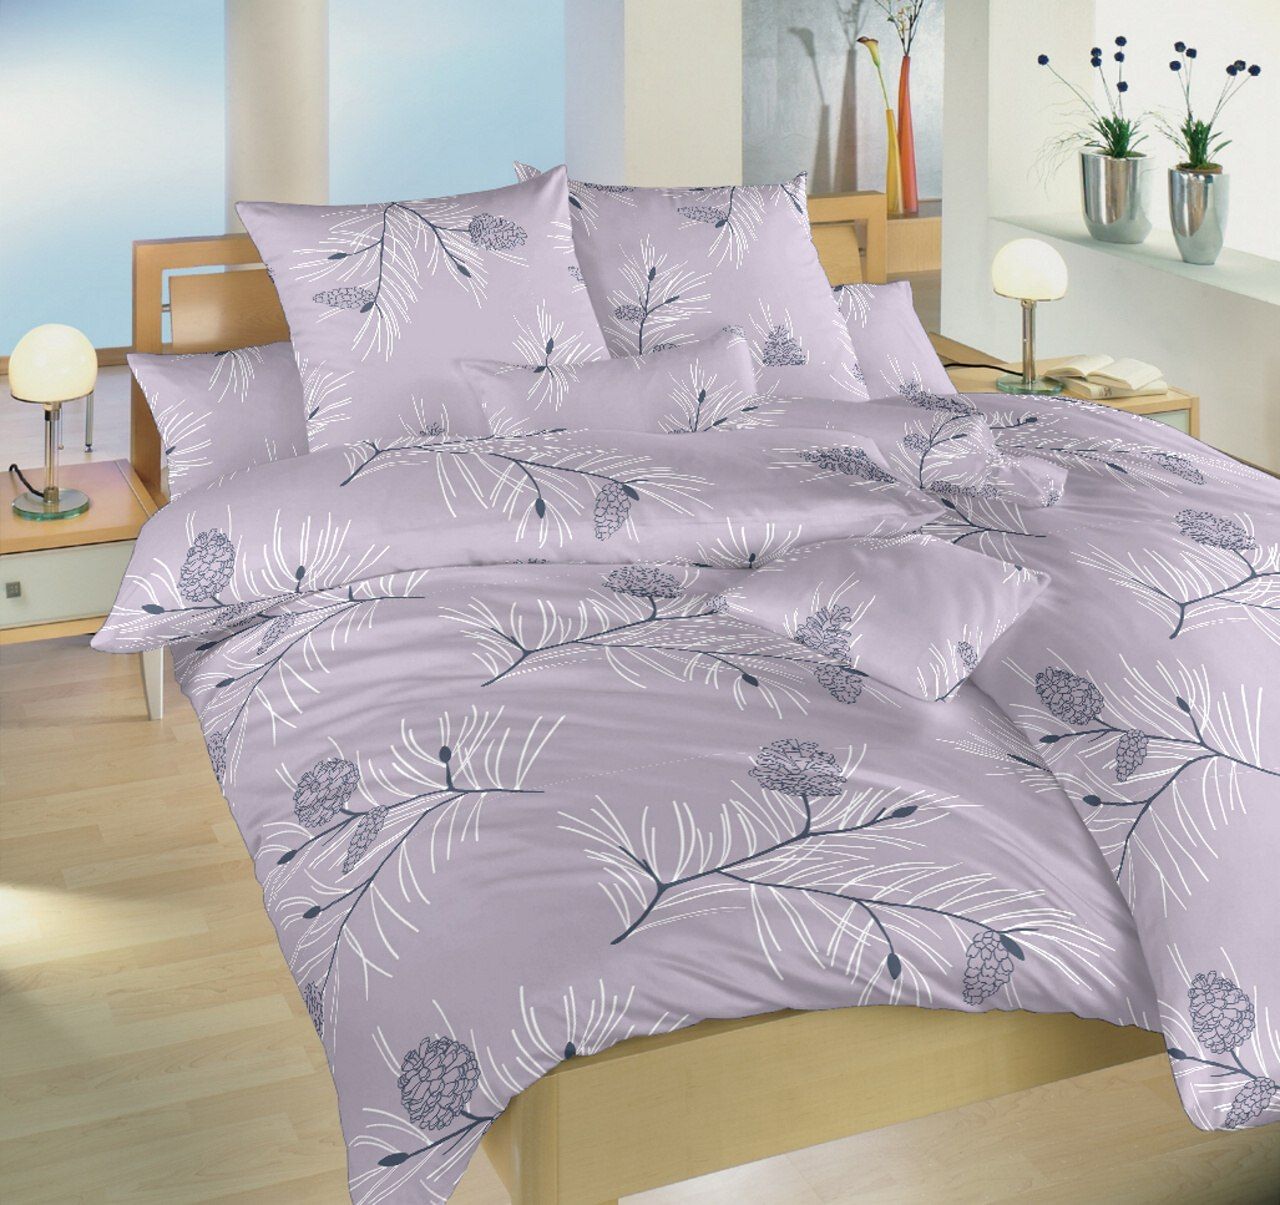 Dadka Povlečení bavlna Jehličí violet 200x220, 2x70x90 cm